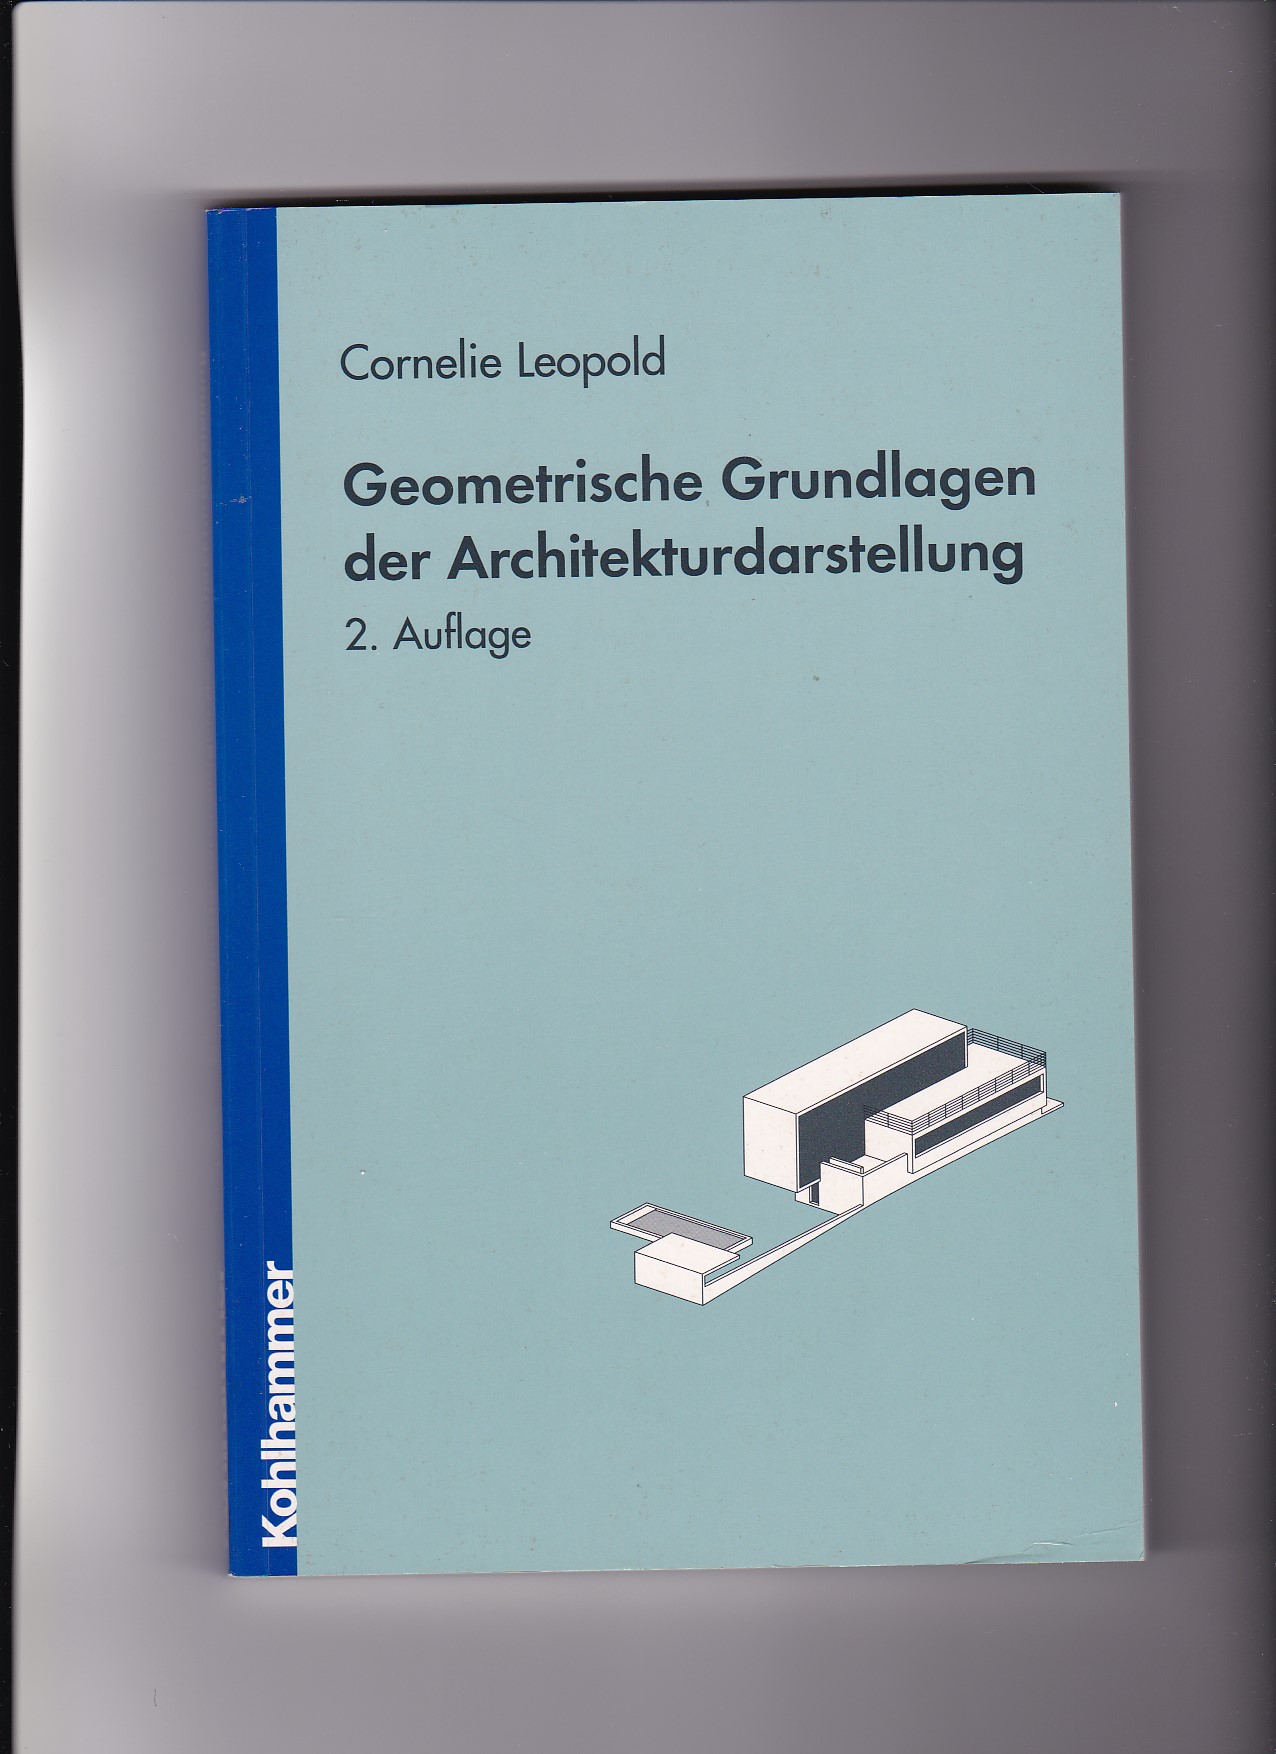 Cornelie Leopold, Geometrische Grundlagen der Architekturdarstellung  2. Auflage - Leopold, Cornelie (Verfasser)